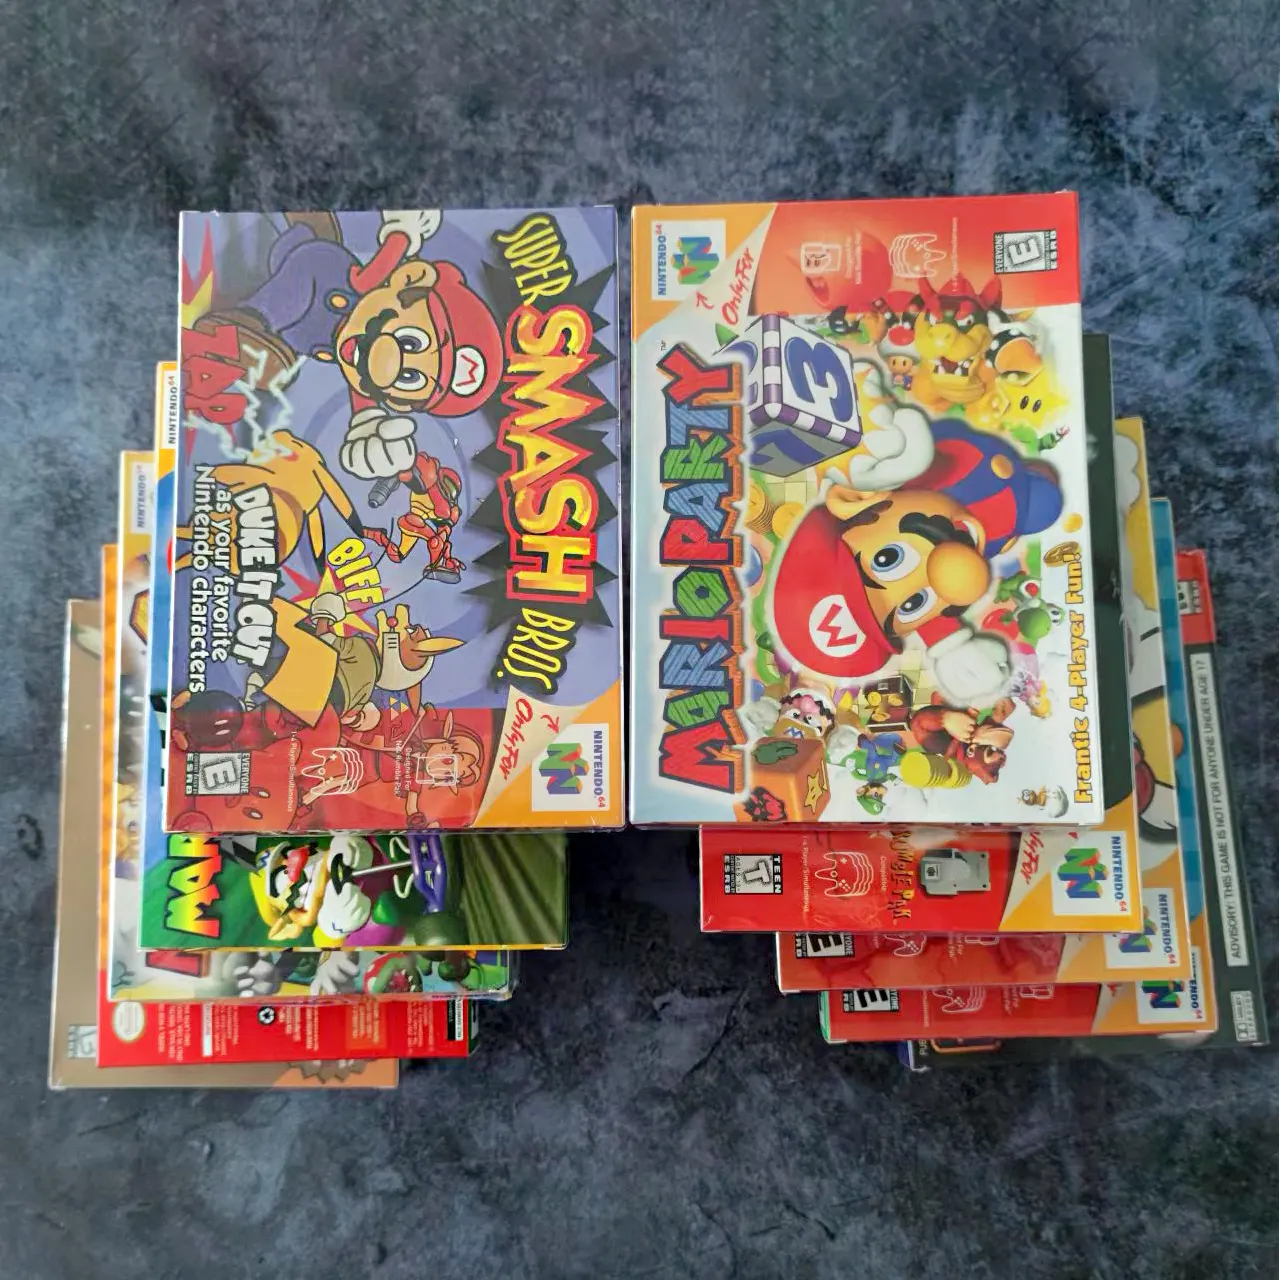 Série de cartões n64 para nintendo 64, em estoque, com caixa de embalagem